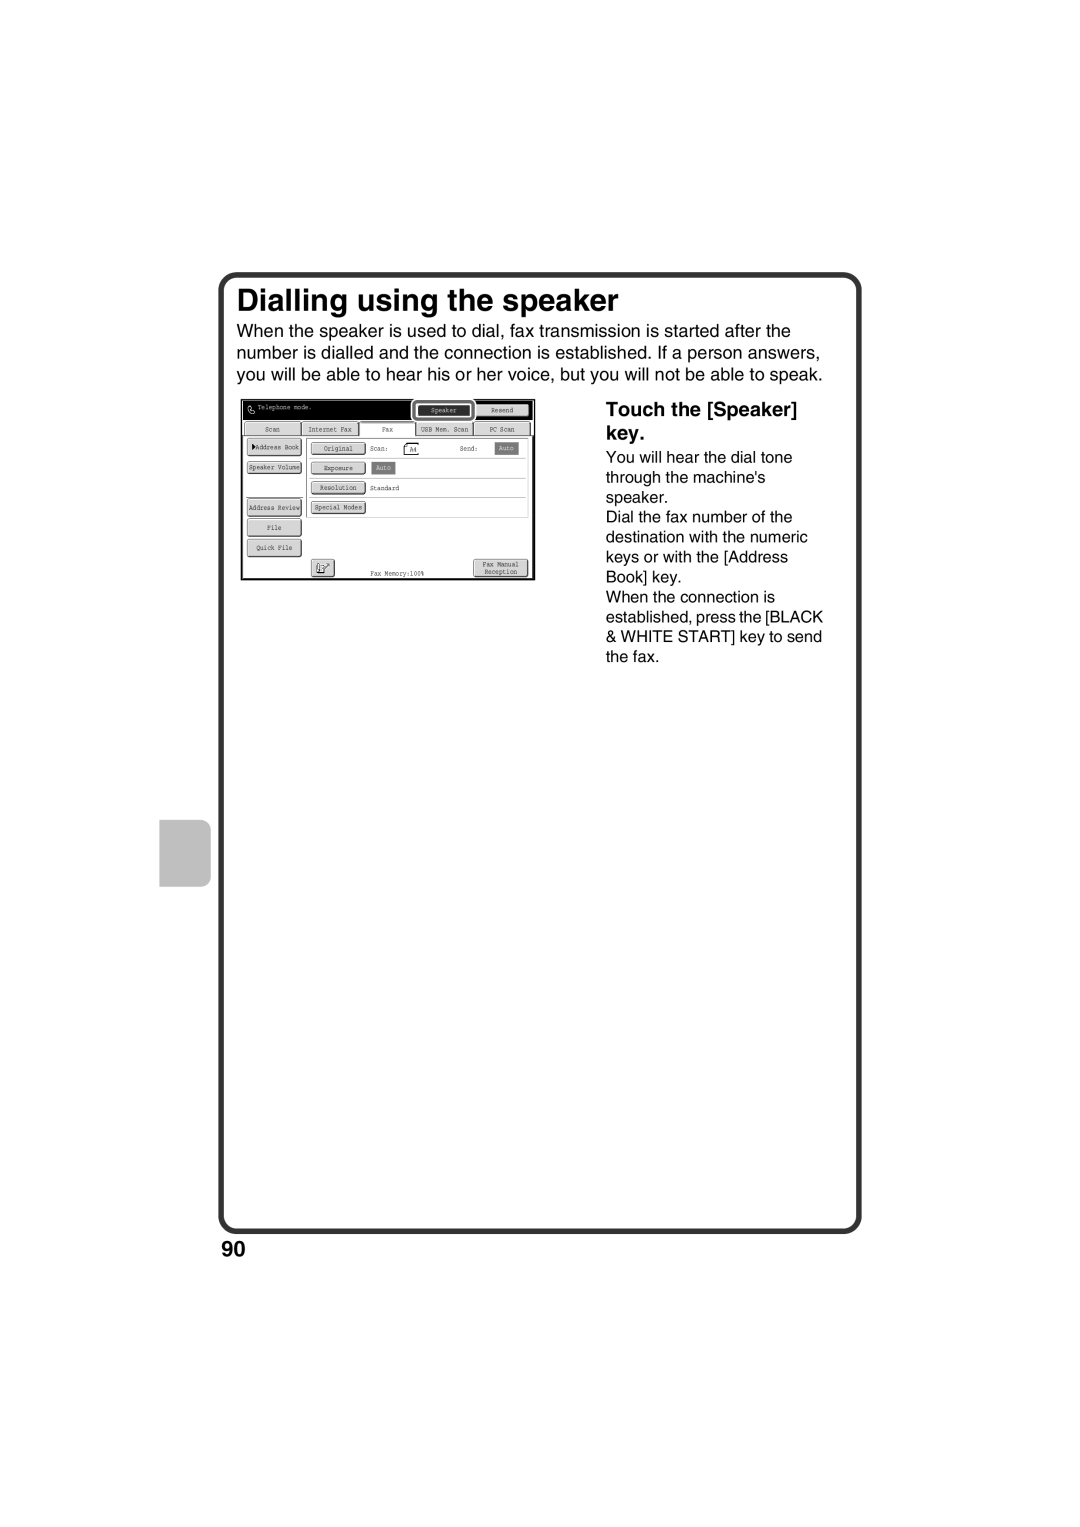 Sharp MX-C311, MX-C381 quick start Dialling using the speaker, Touch the Speaker key 